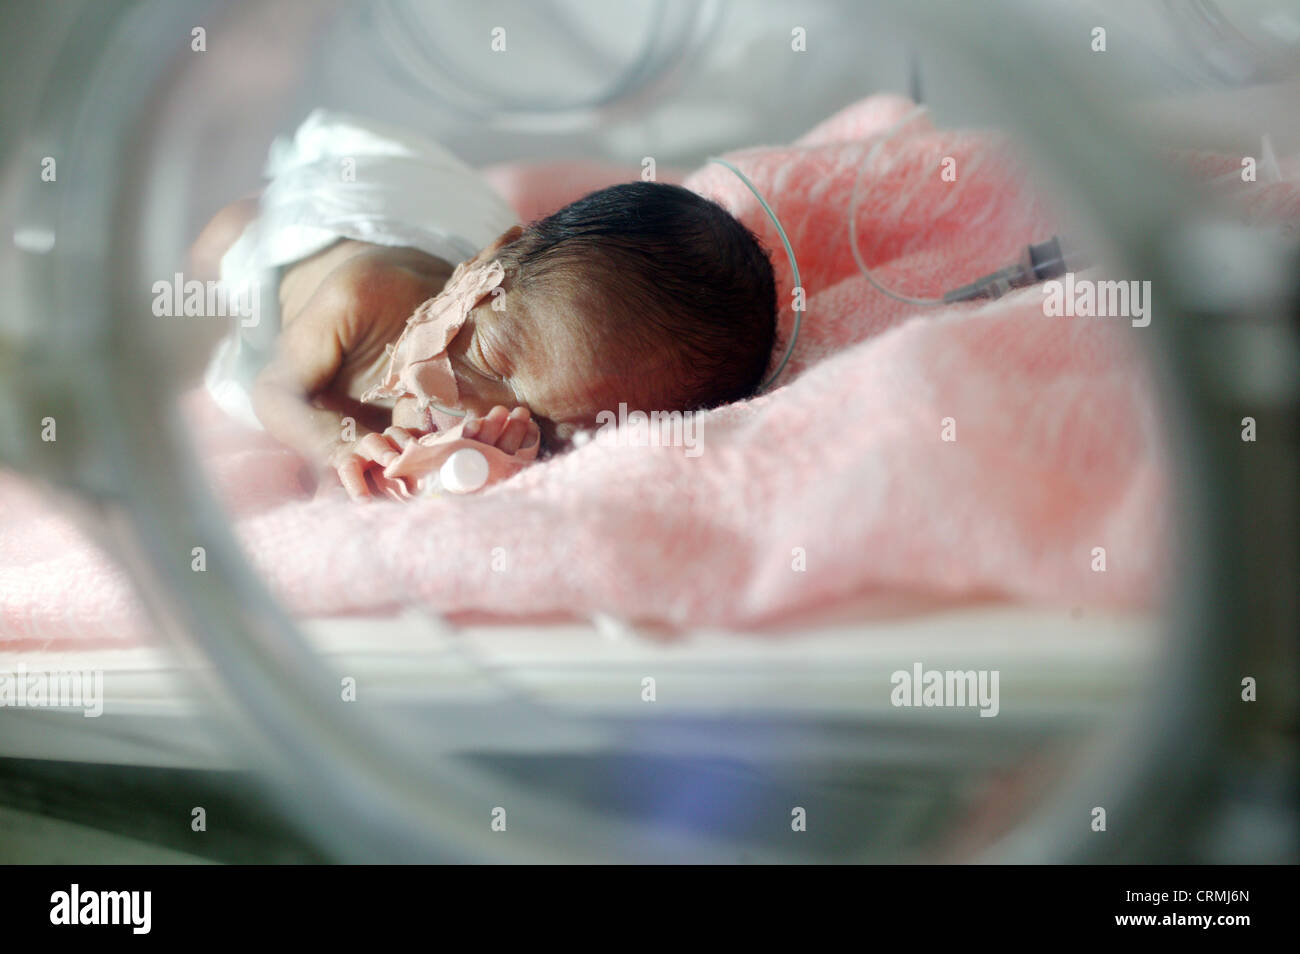 5 días de nacido el bebé prematuro a las 31 semanas pesa 1Kg. El bebé sufre de síndrome de dificultad respiratoria y la ictericia. Foto de stock